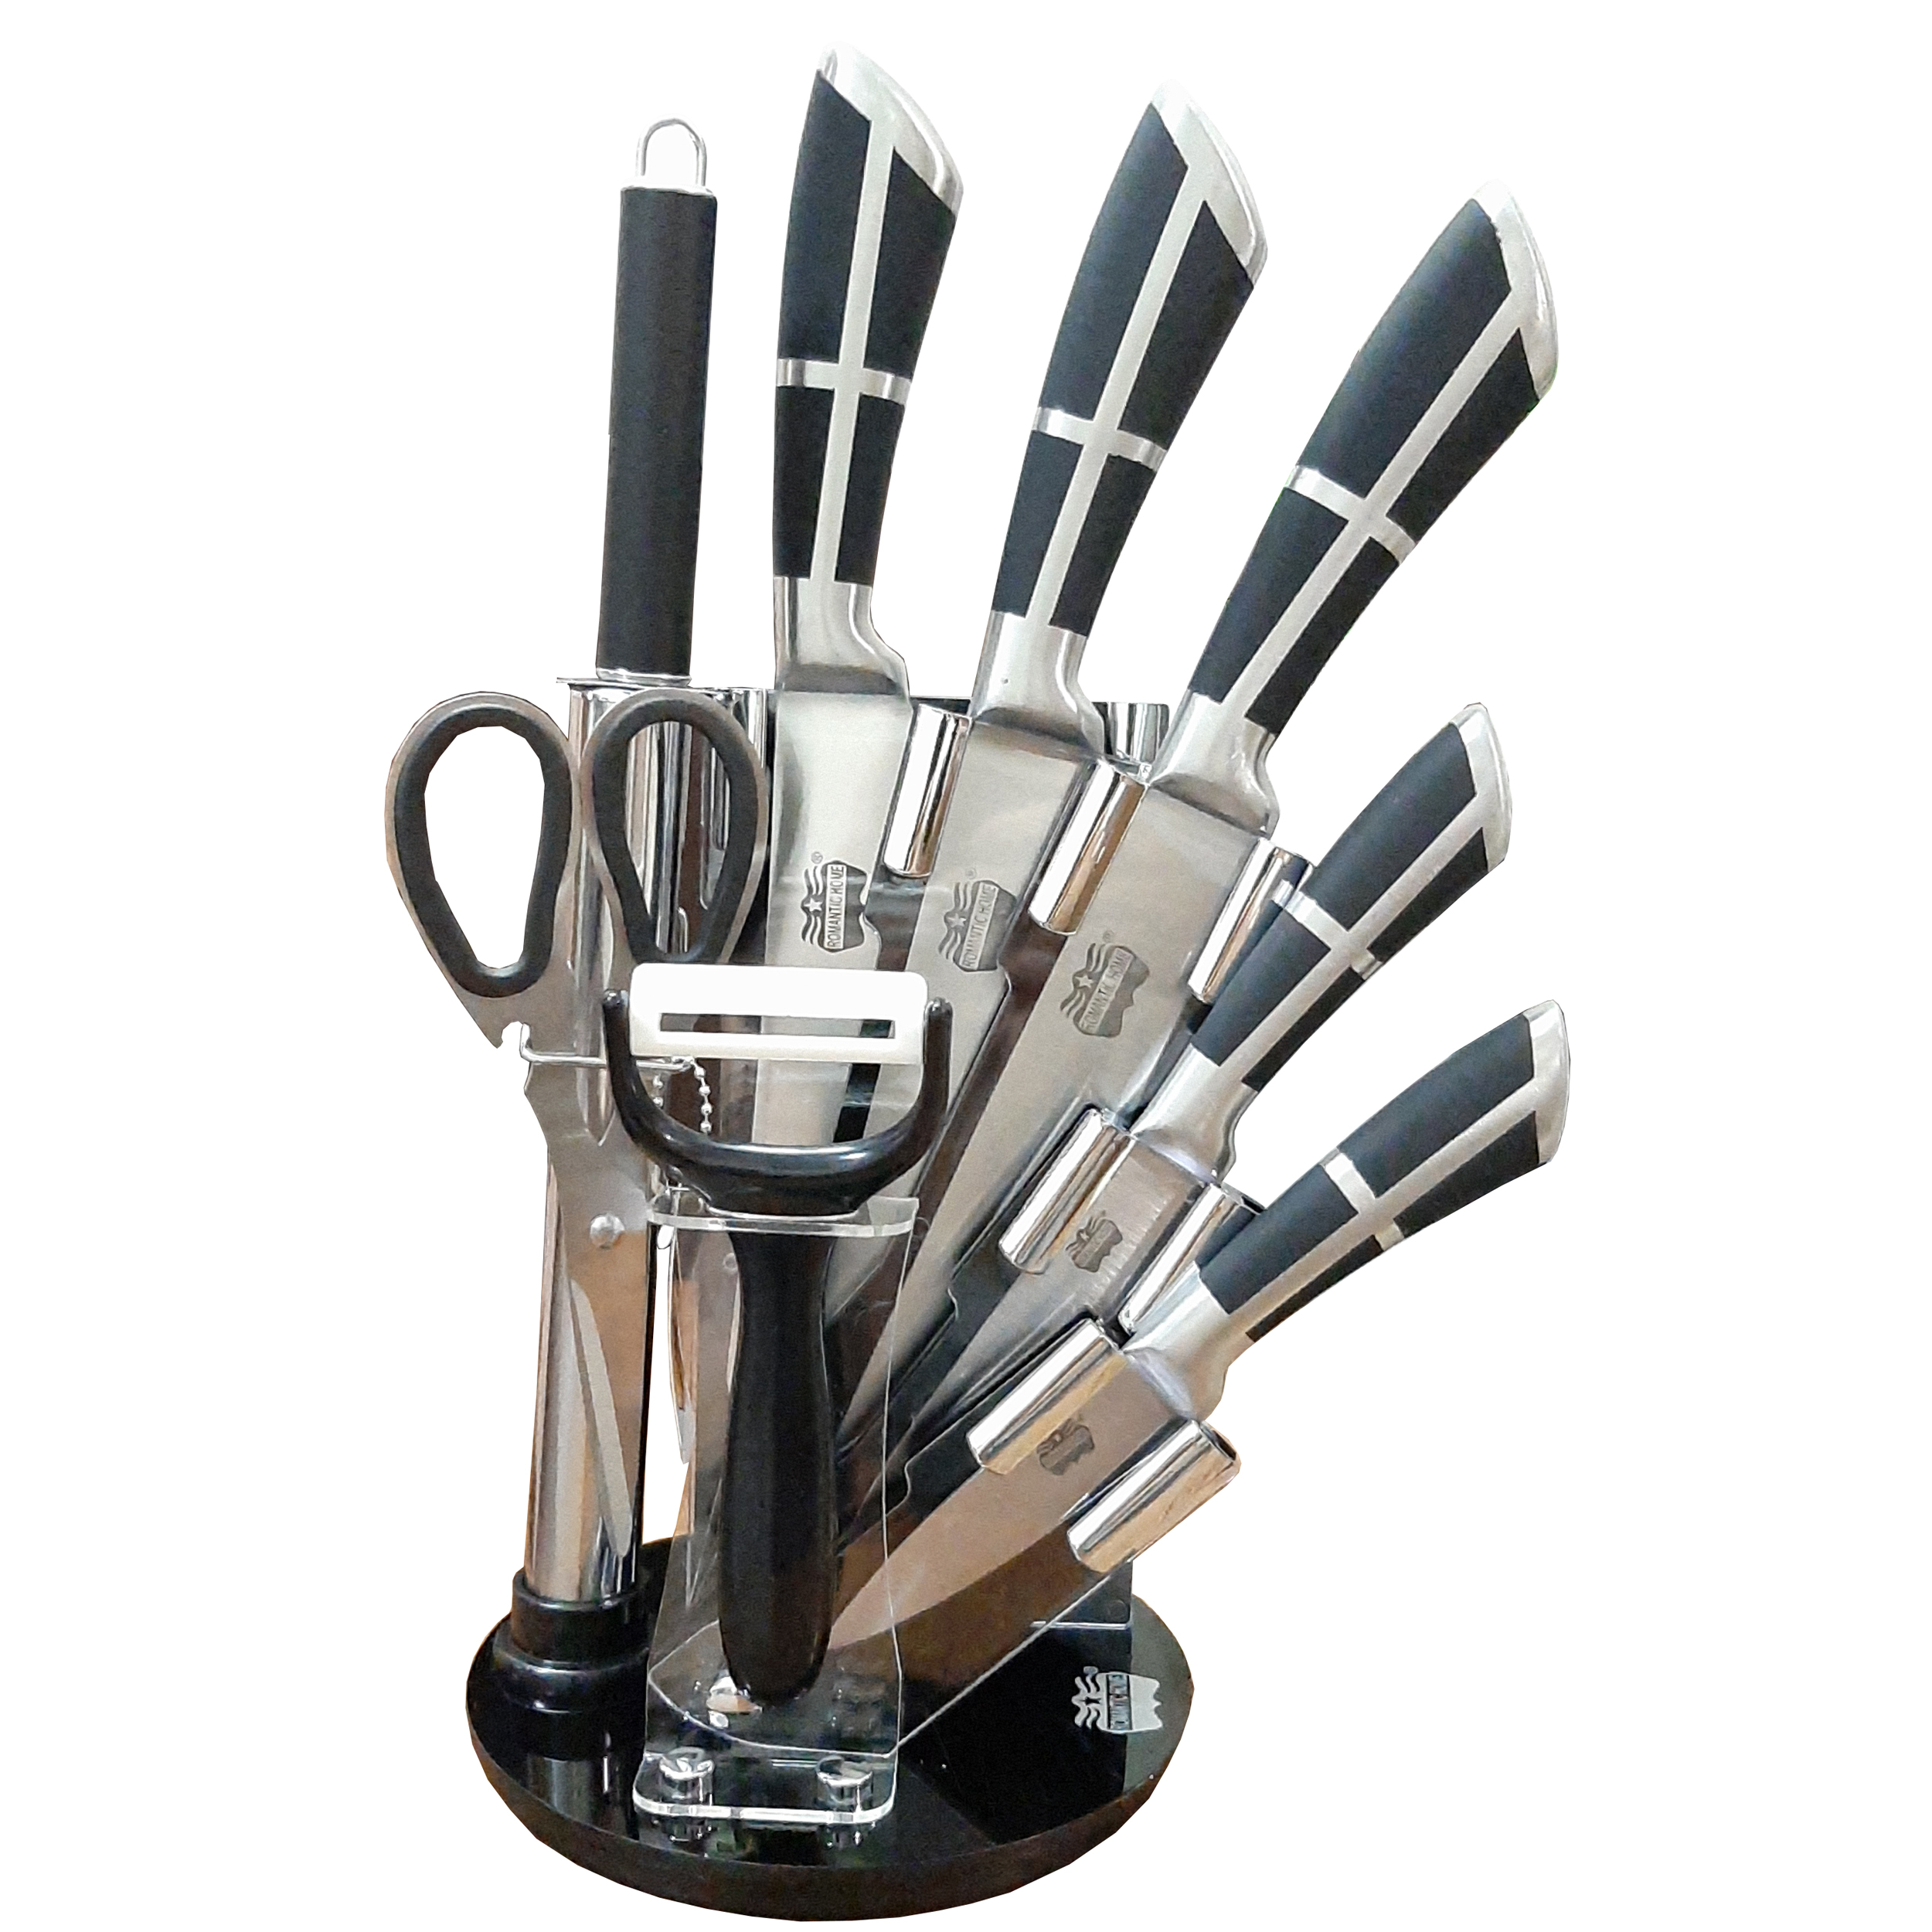 ست چاقو آشپزخانه 9 پارچه رومانتیک هوم مدل RH-2 